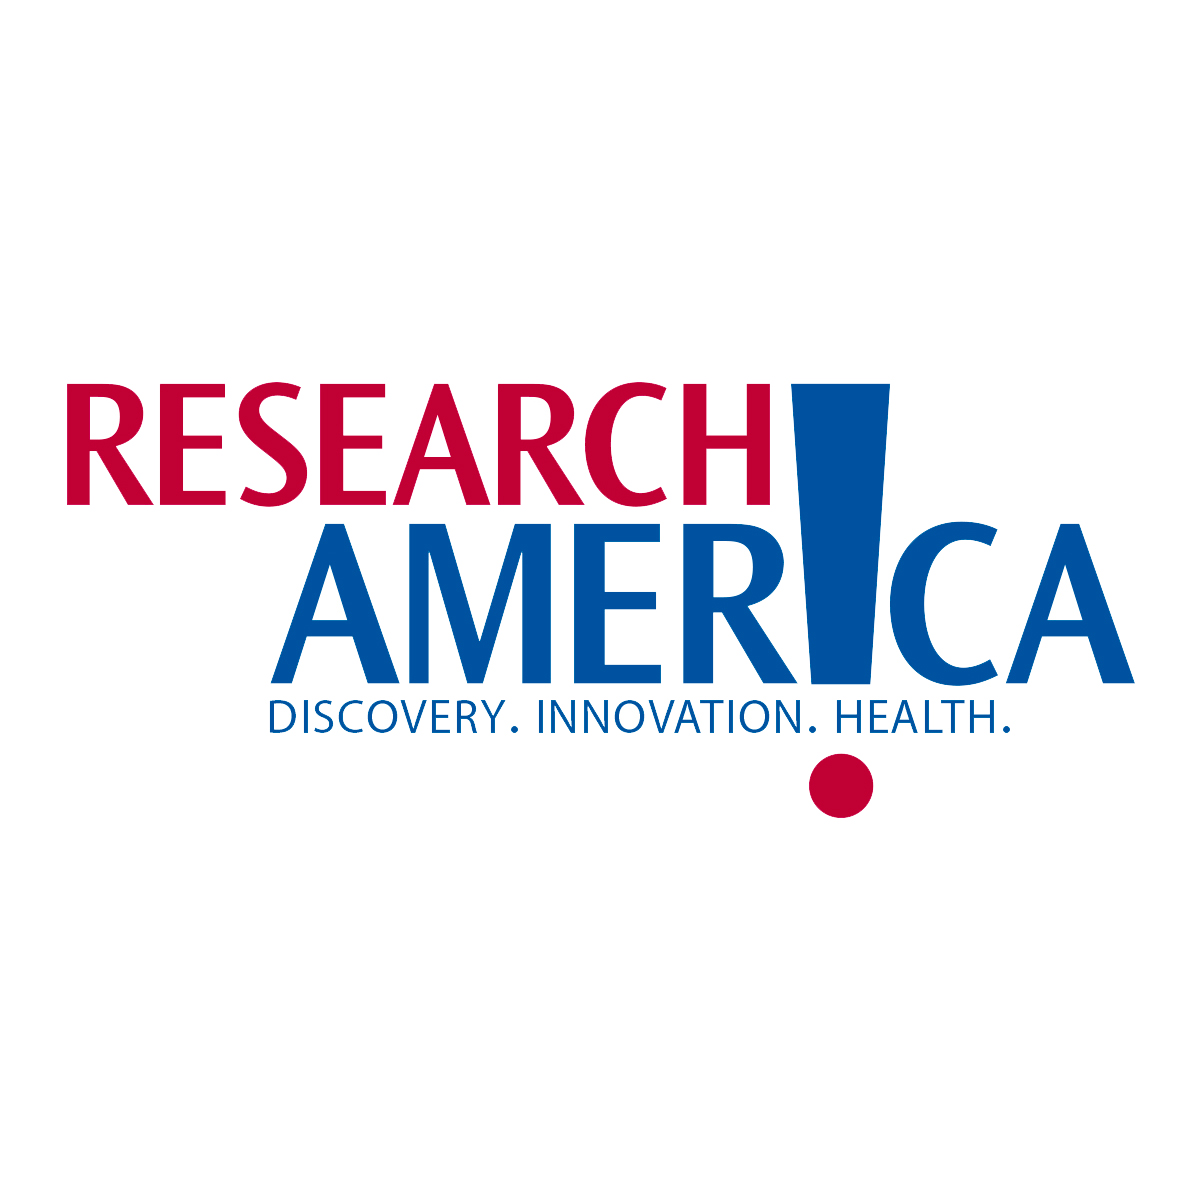 Research America